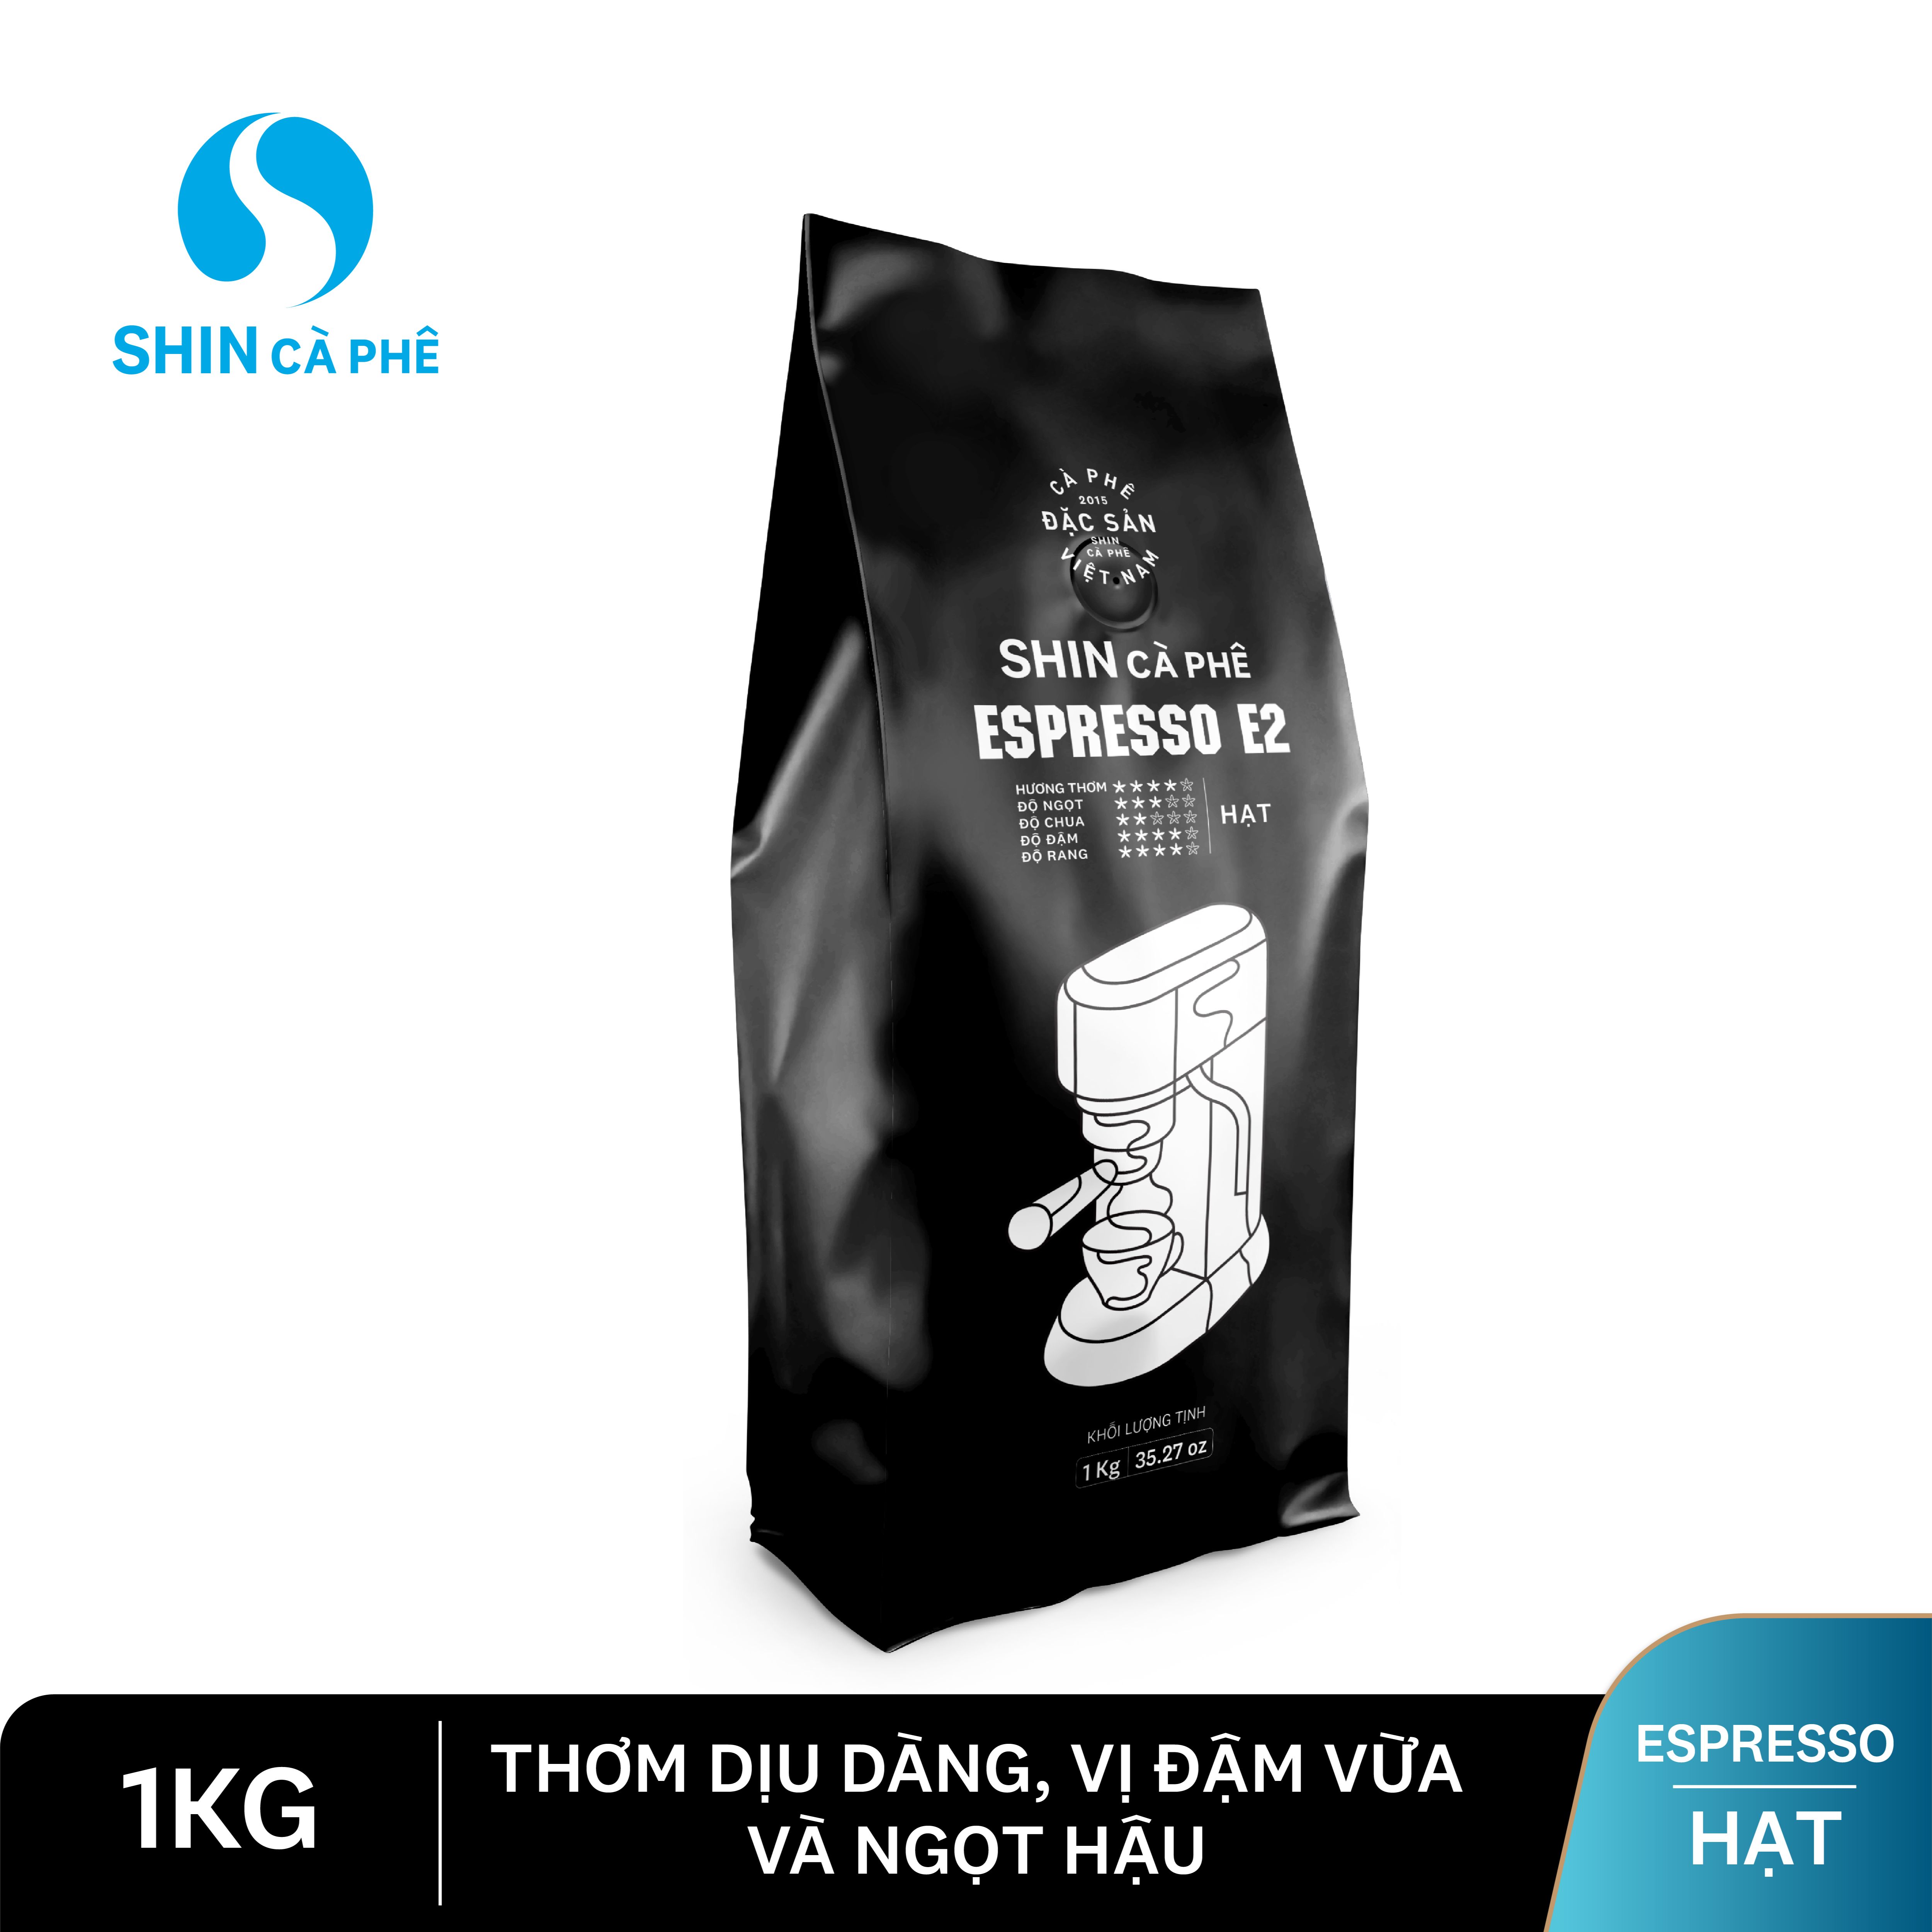 SHIN cà phê - Espresso E2 1Kg Hạt - Cà phê nguyên chất pha máy